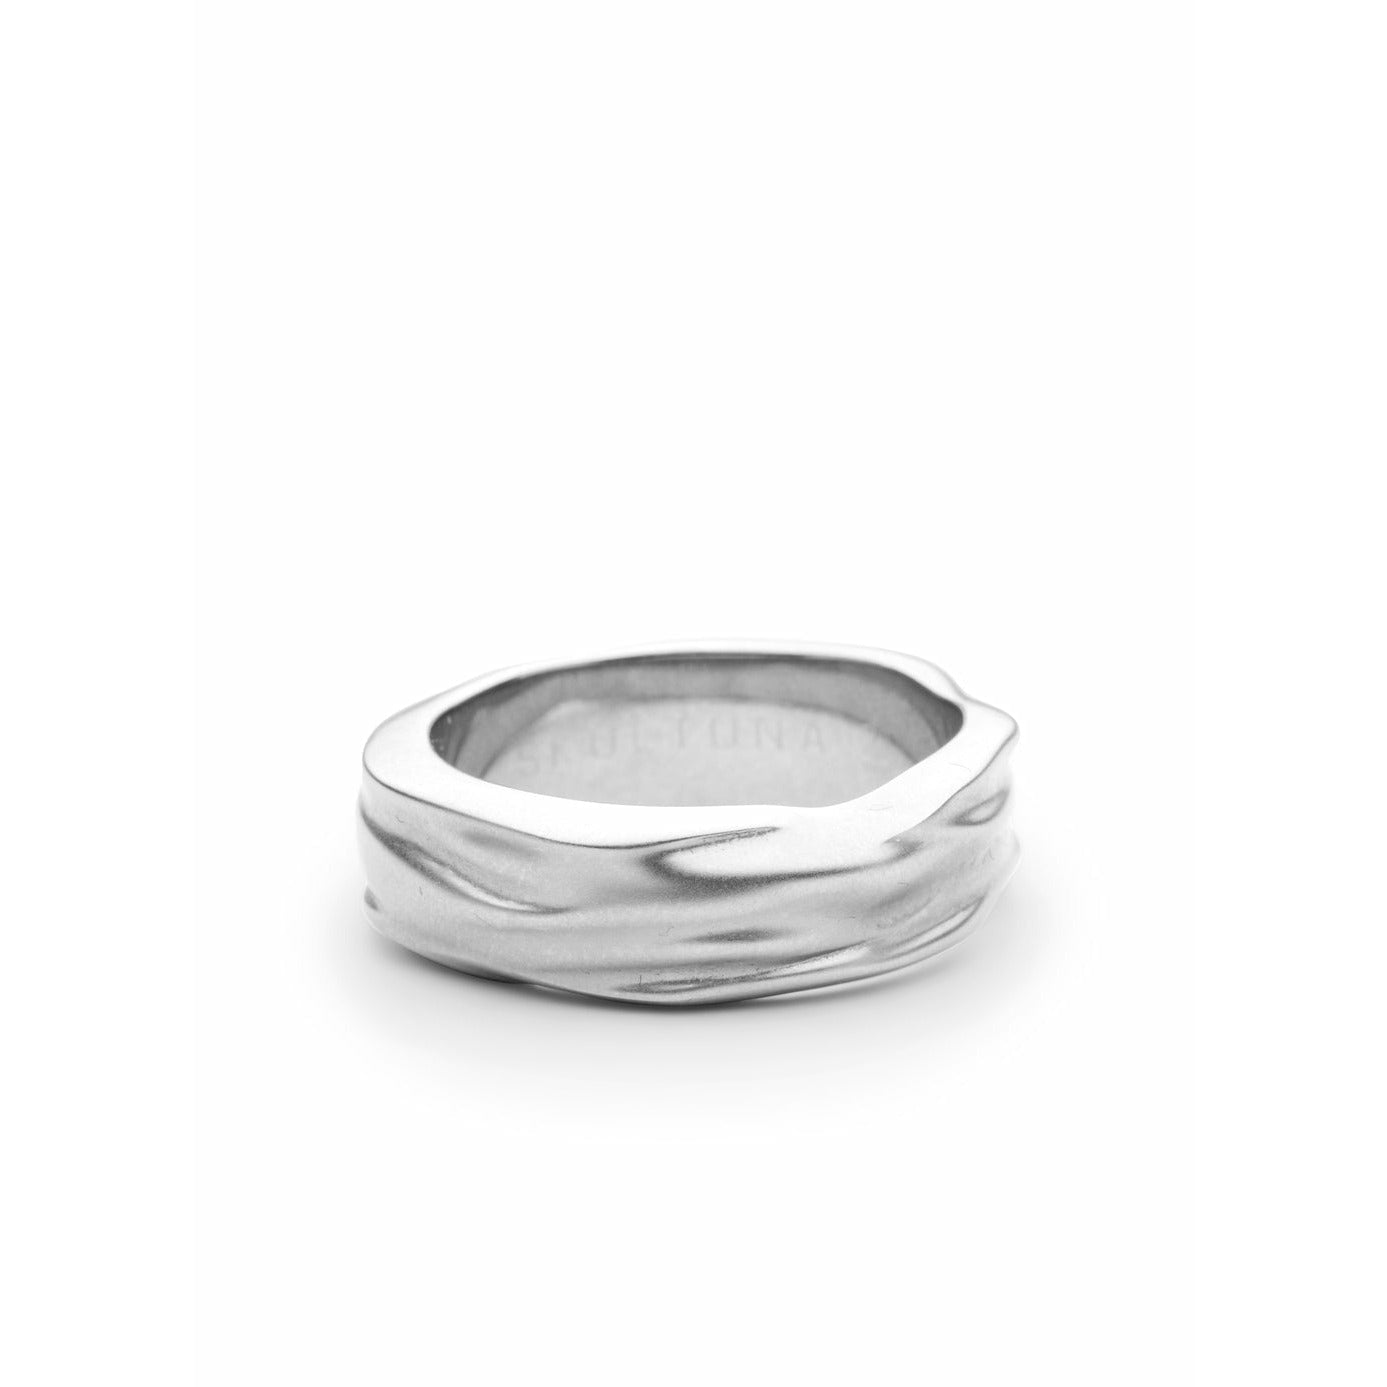 Skultuna Opaque Objects Thick Ring Small Matt Steel, ø1,6 Cm